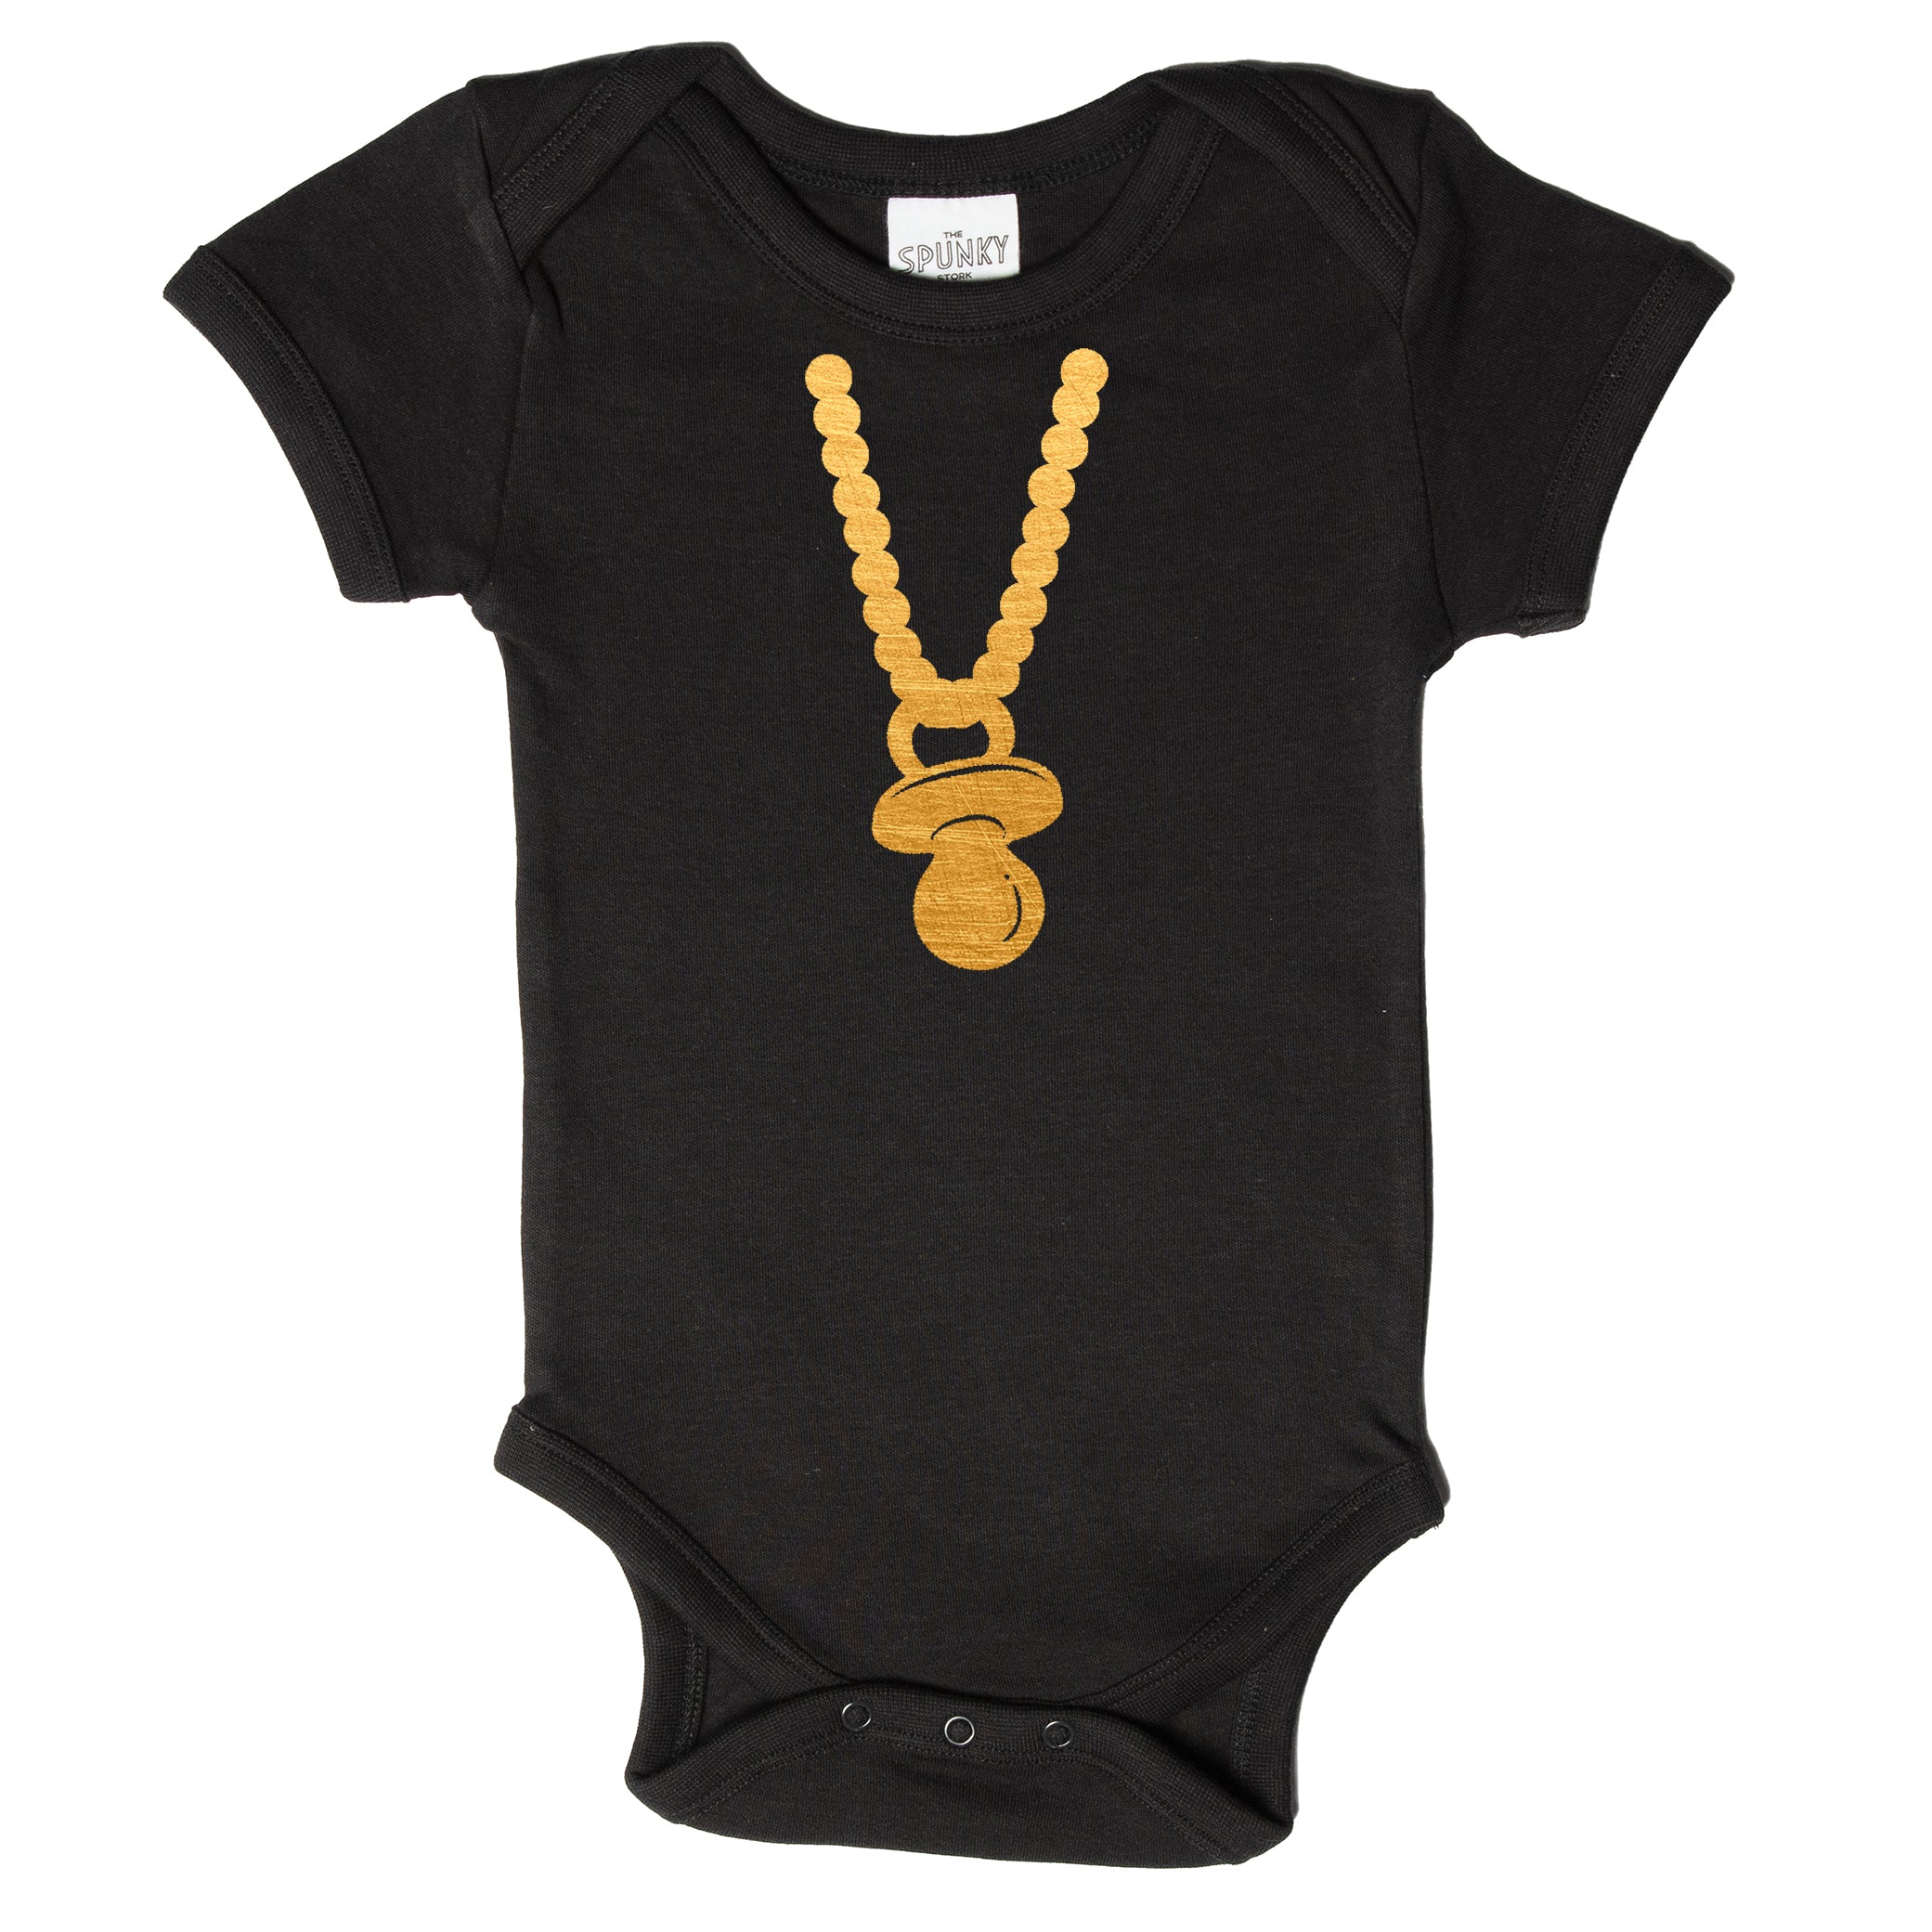 The Spunky Stork Gangsta Gold Chain Baby Onesie & Graphic Tee